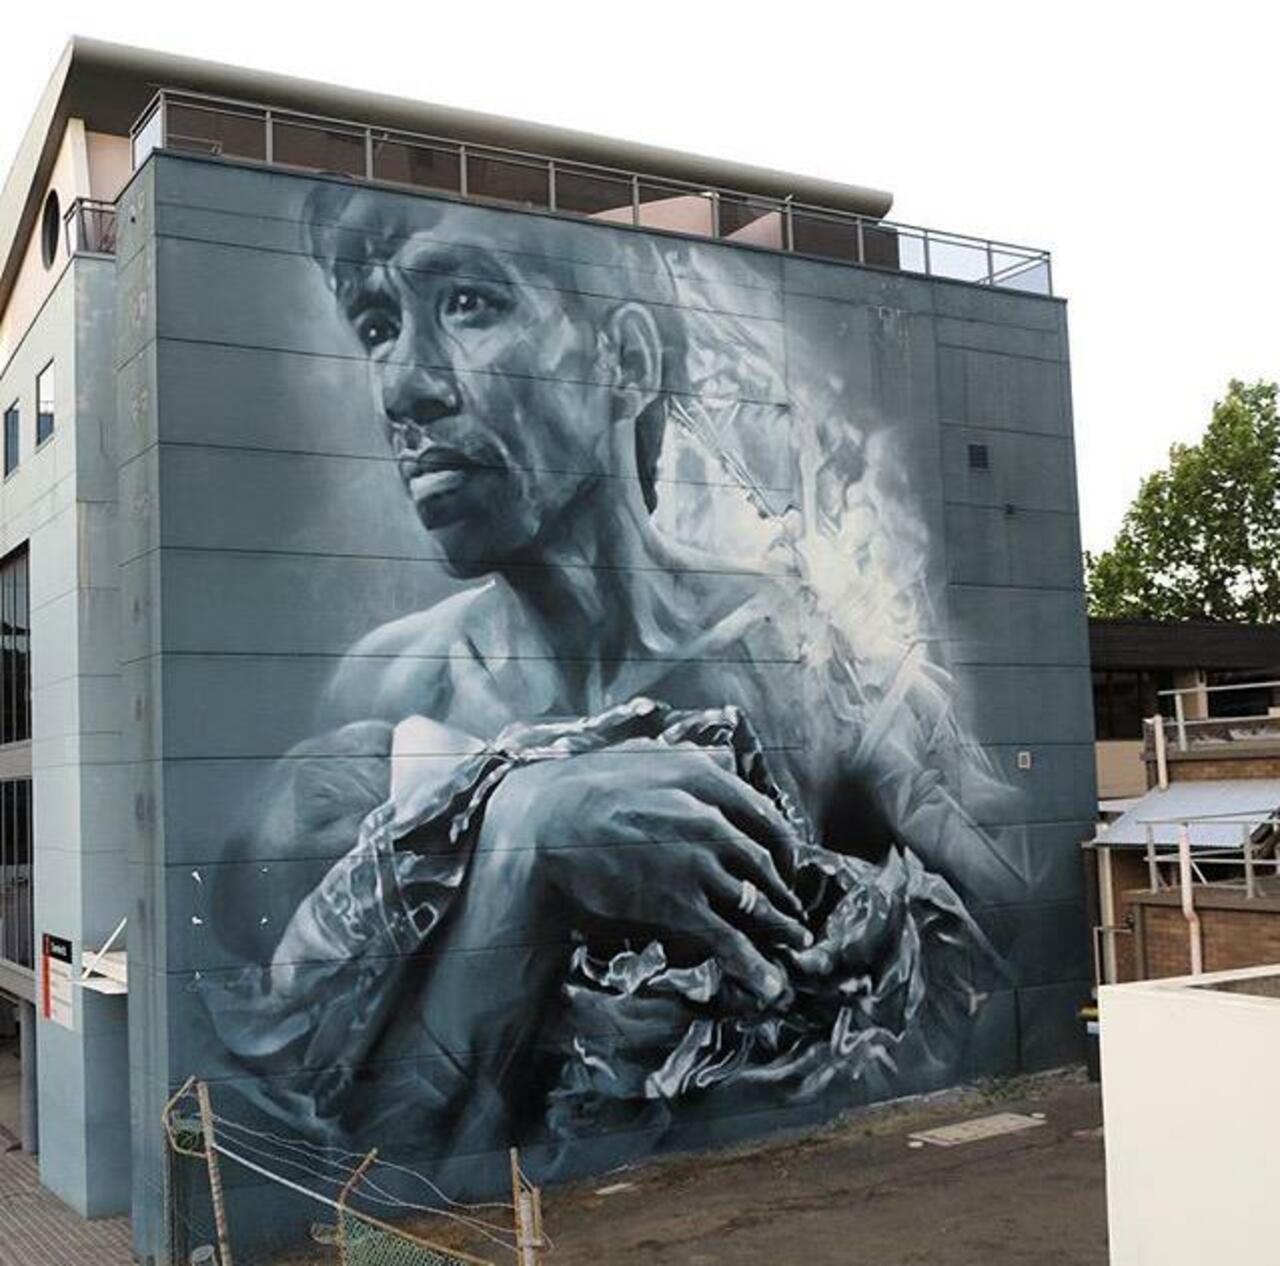 New Street Art by Guido Van Helten in Wollongong Australia 

#art #graffiti #mural #streetart http://t.co/yqg7QZAMO3